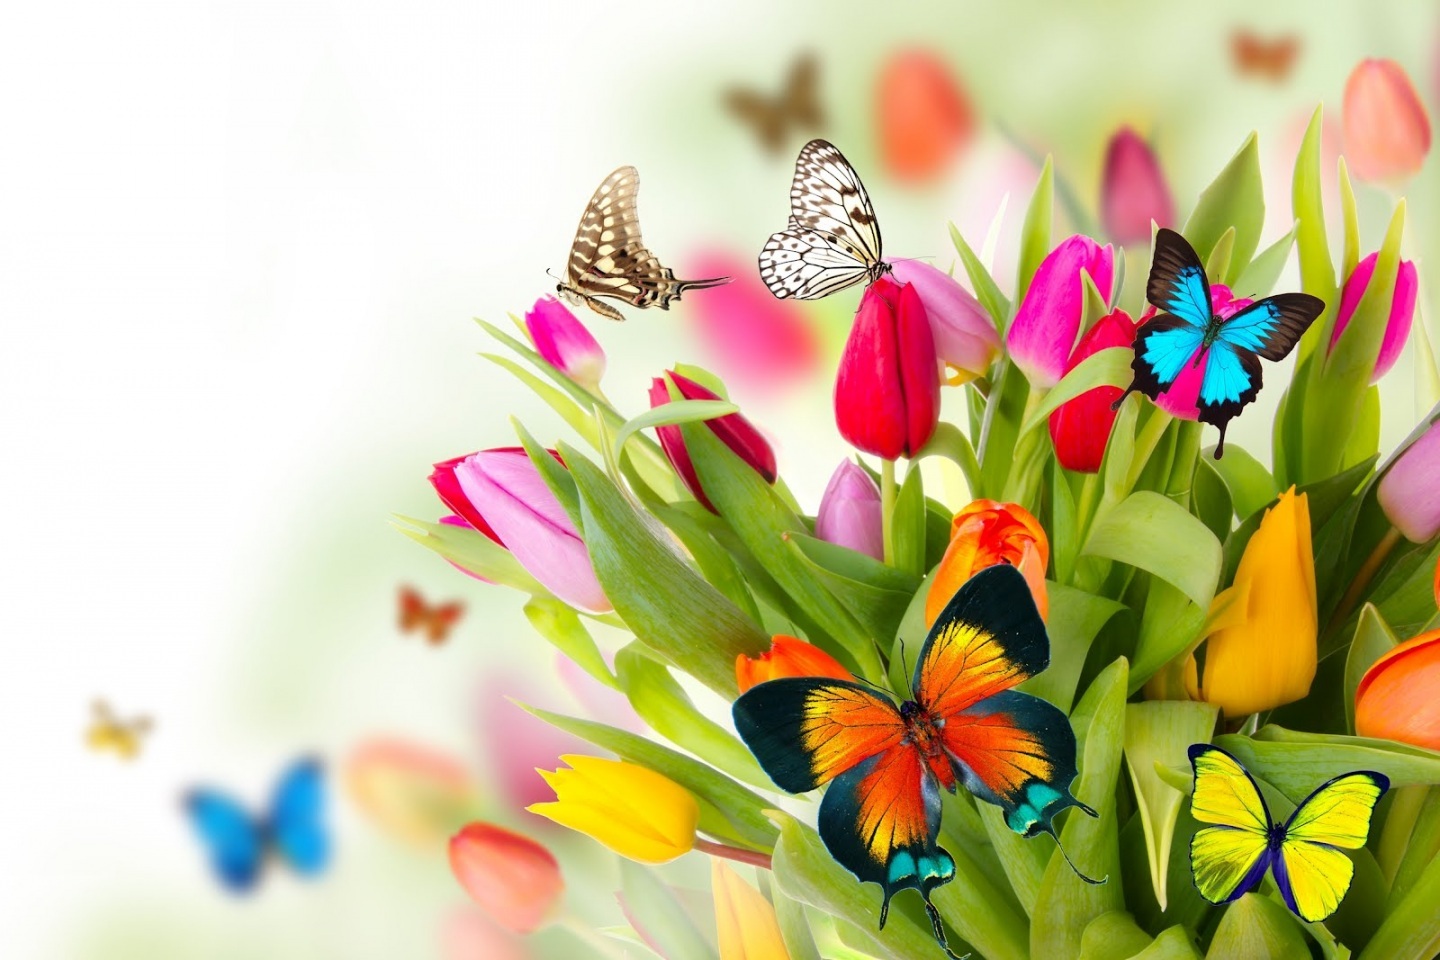 tributo-la-primavera-con-flores-mariposas-de-colores-mariposas-248575947.jpg